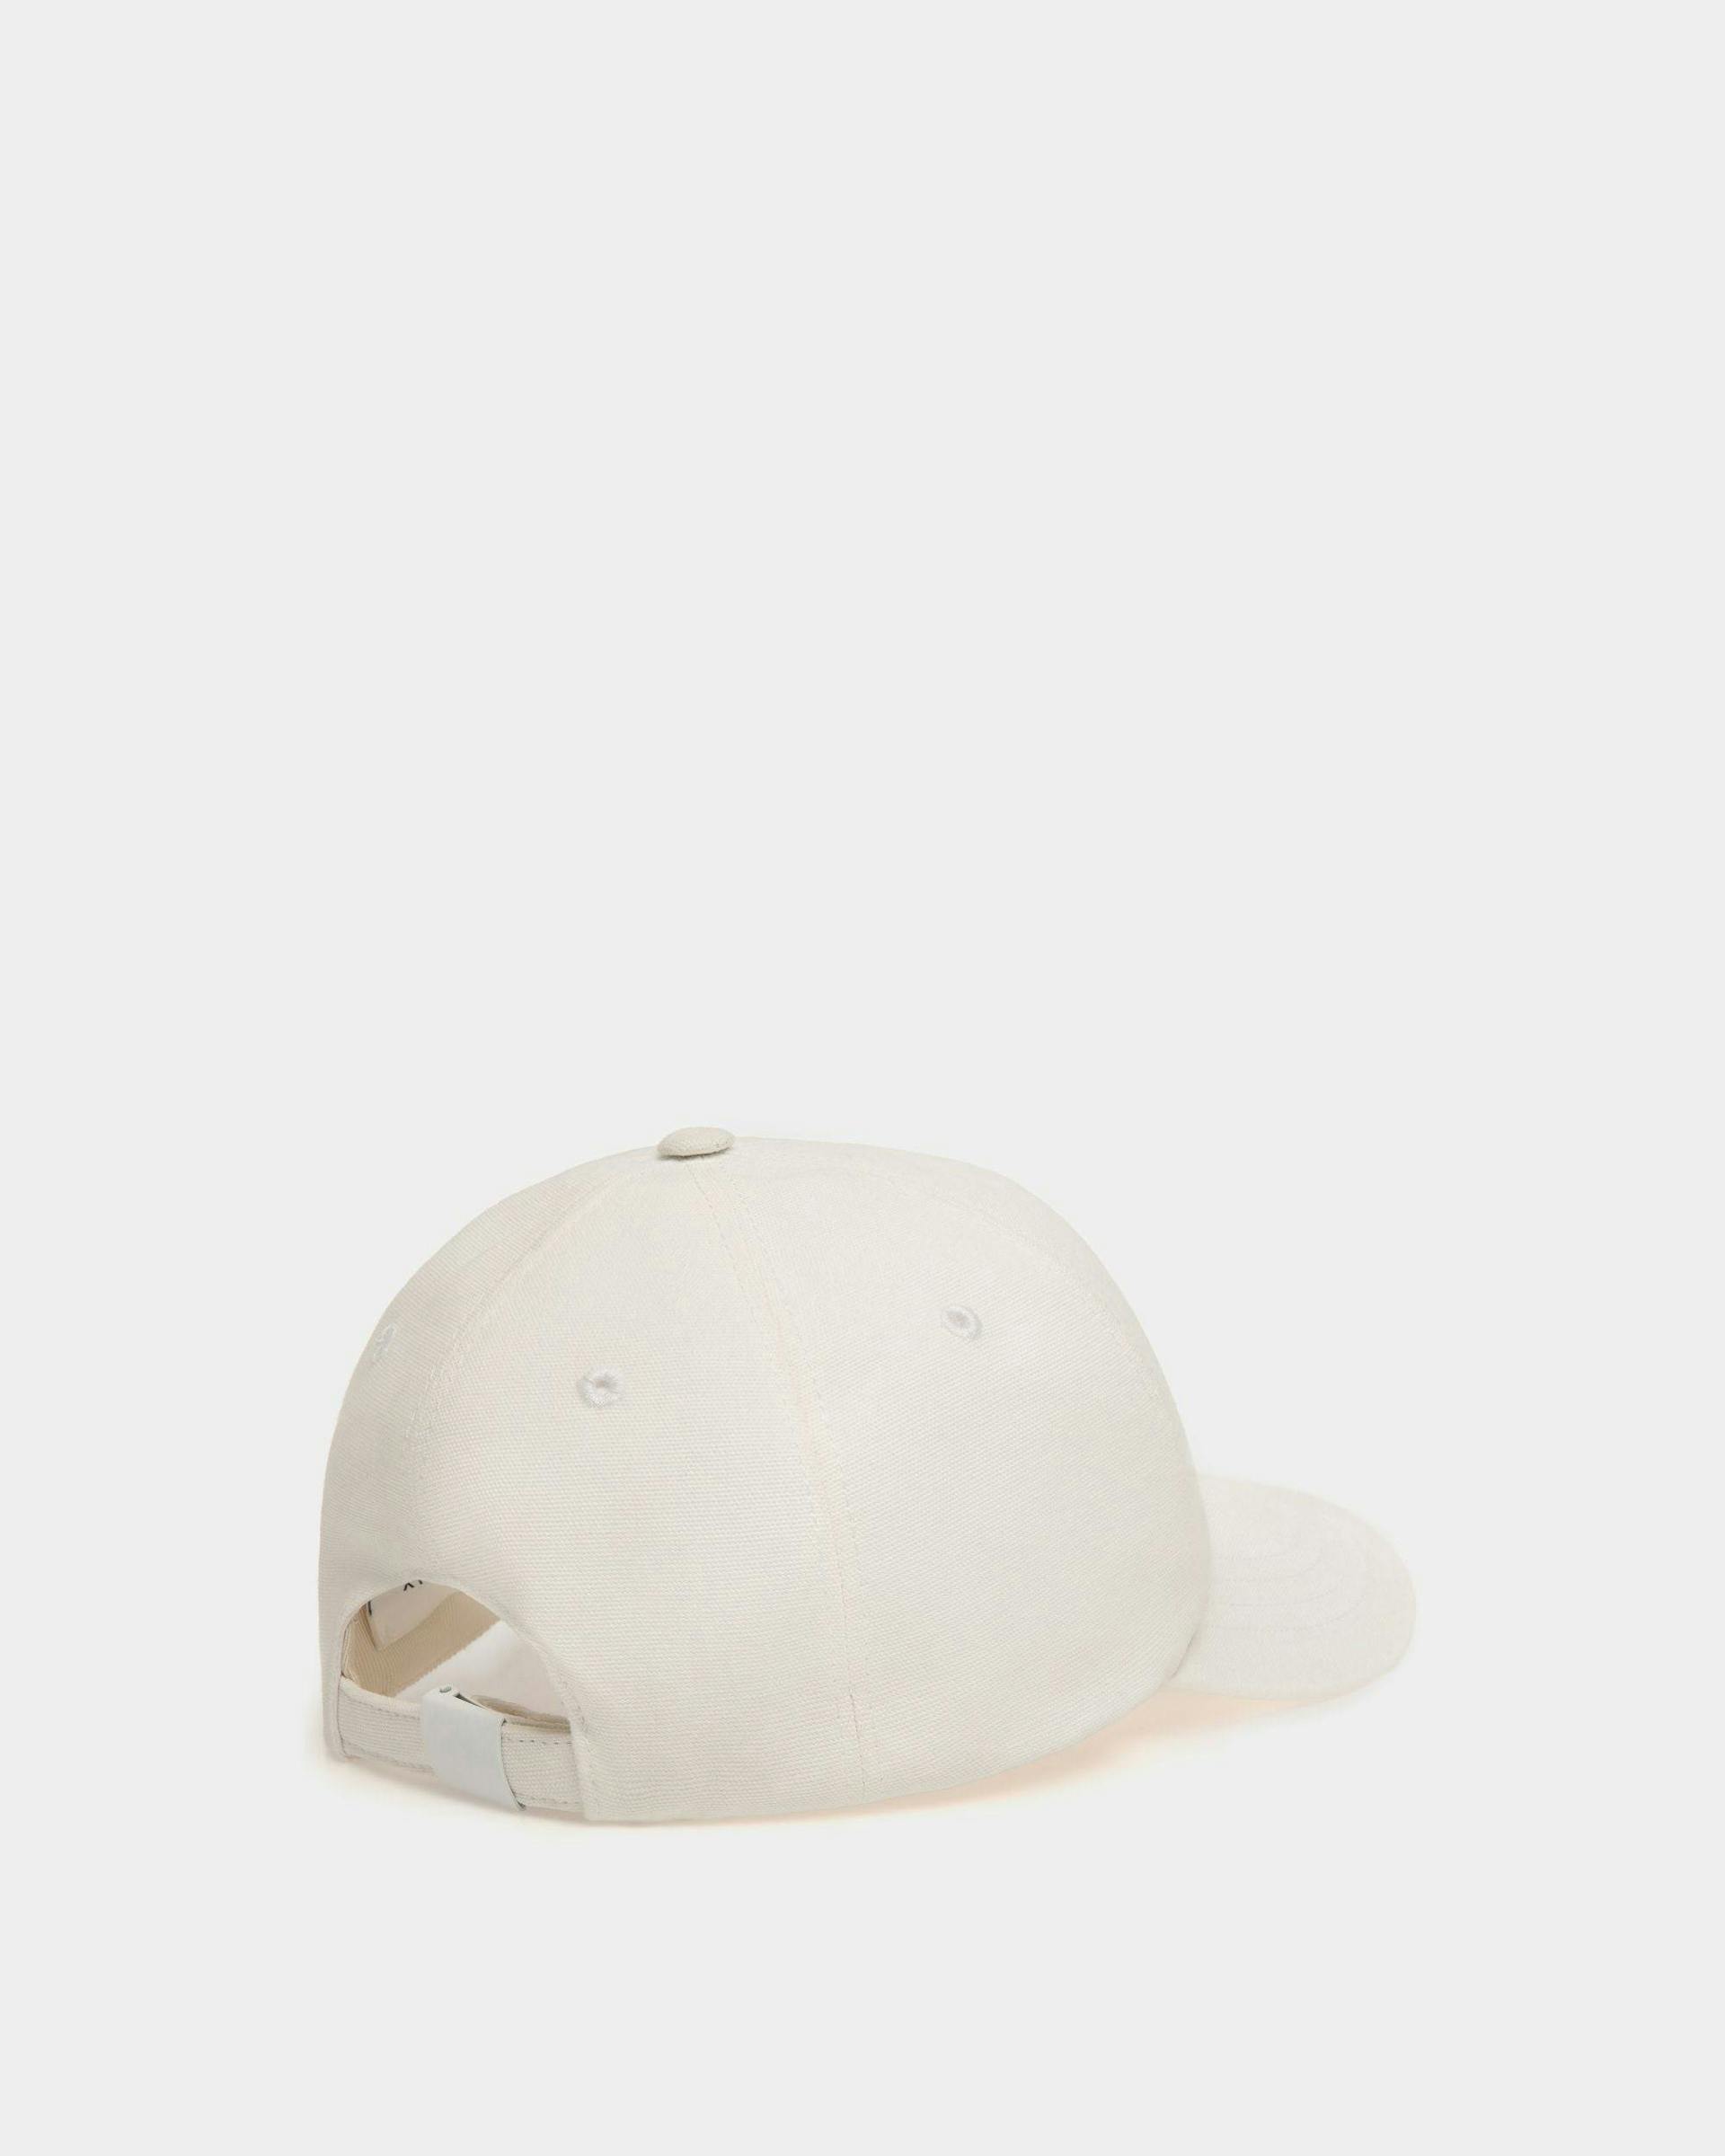 Women's Baseball Hat in White Cotton | Bally | Still Life 3/4 Back